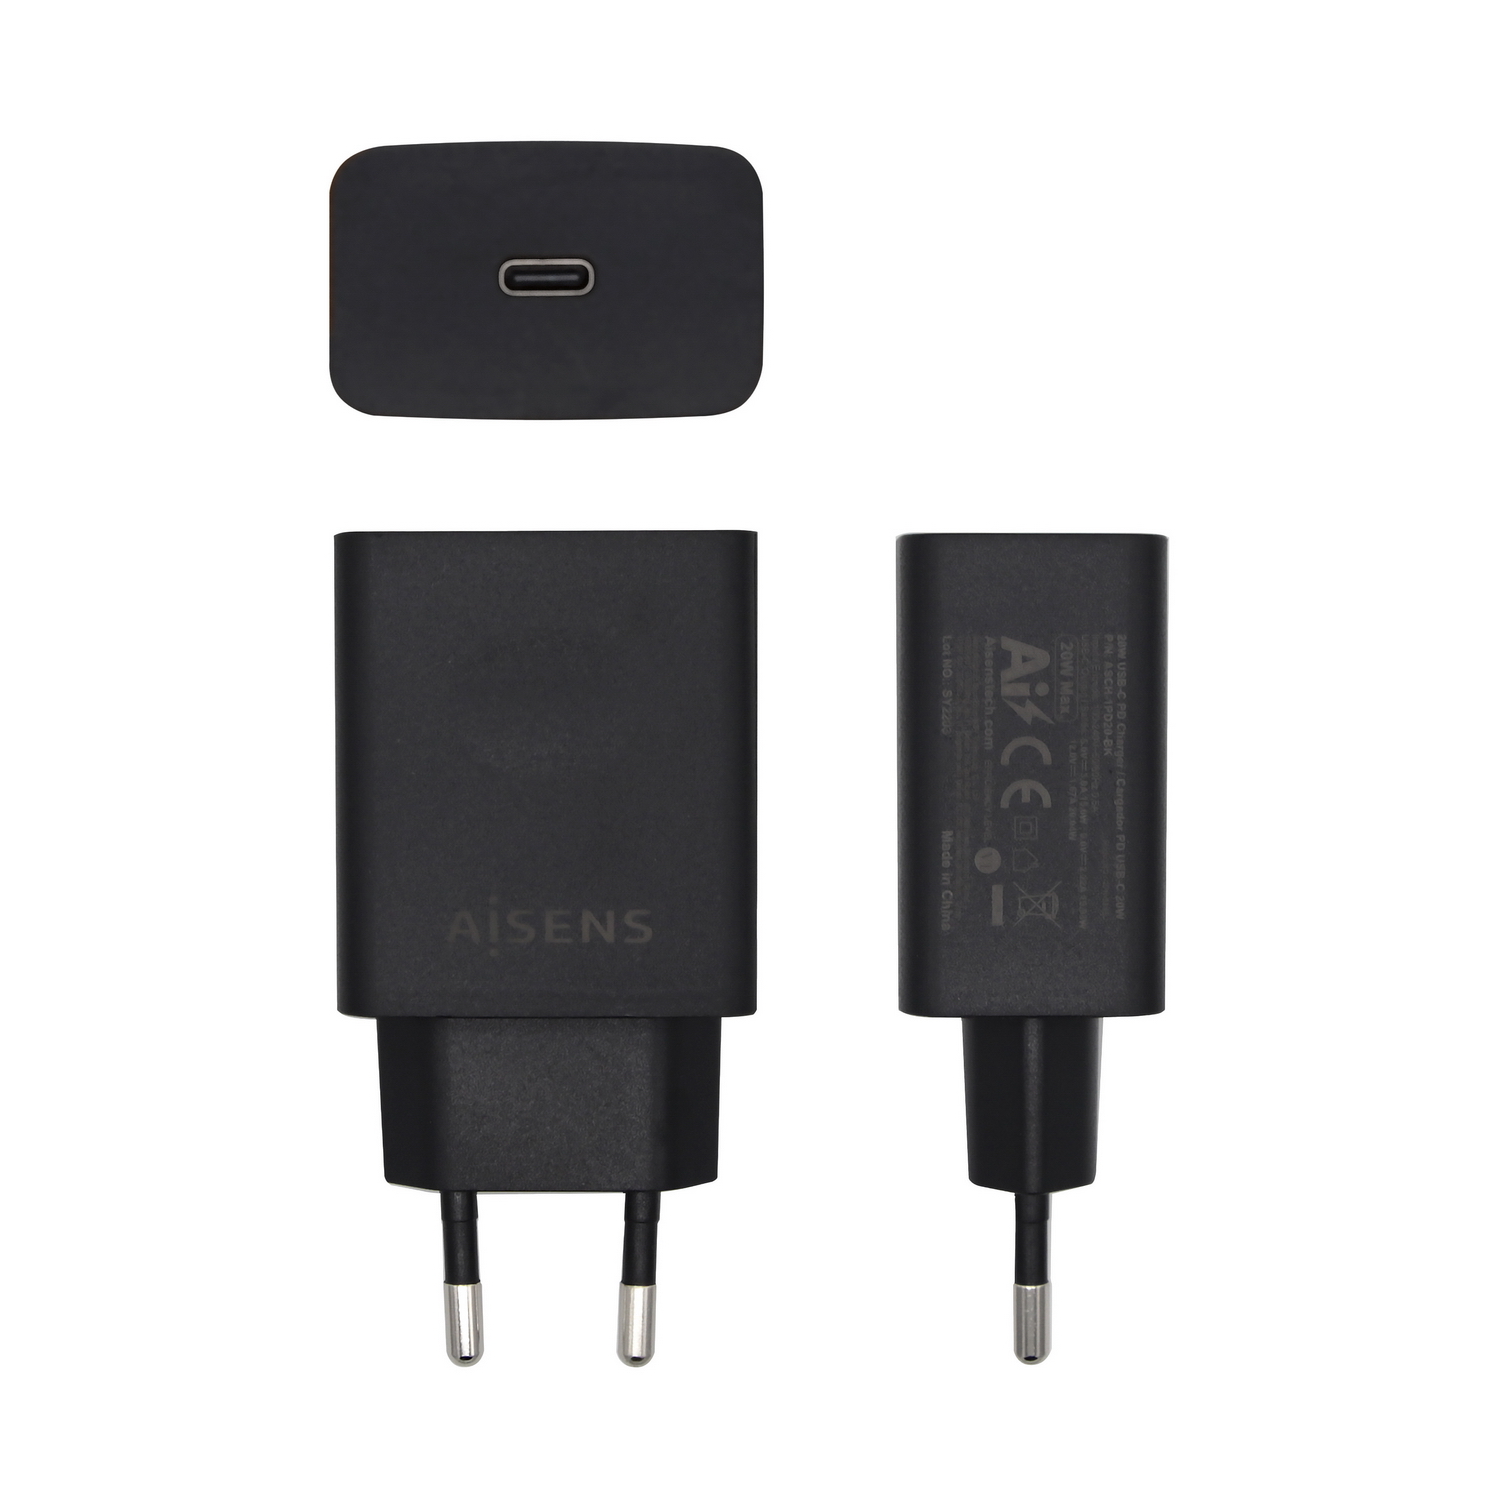 Aisens Chargeur pour Smartphone USB-C PD3.0 1x USB-C 20W